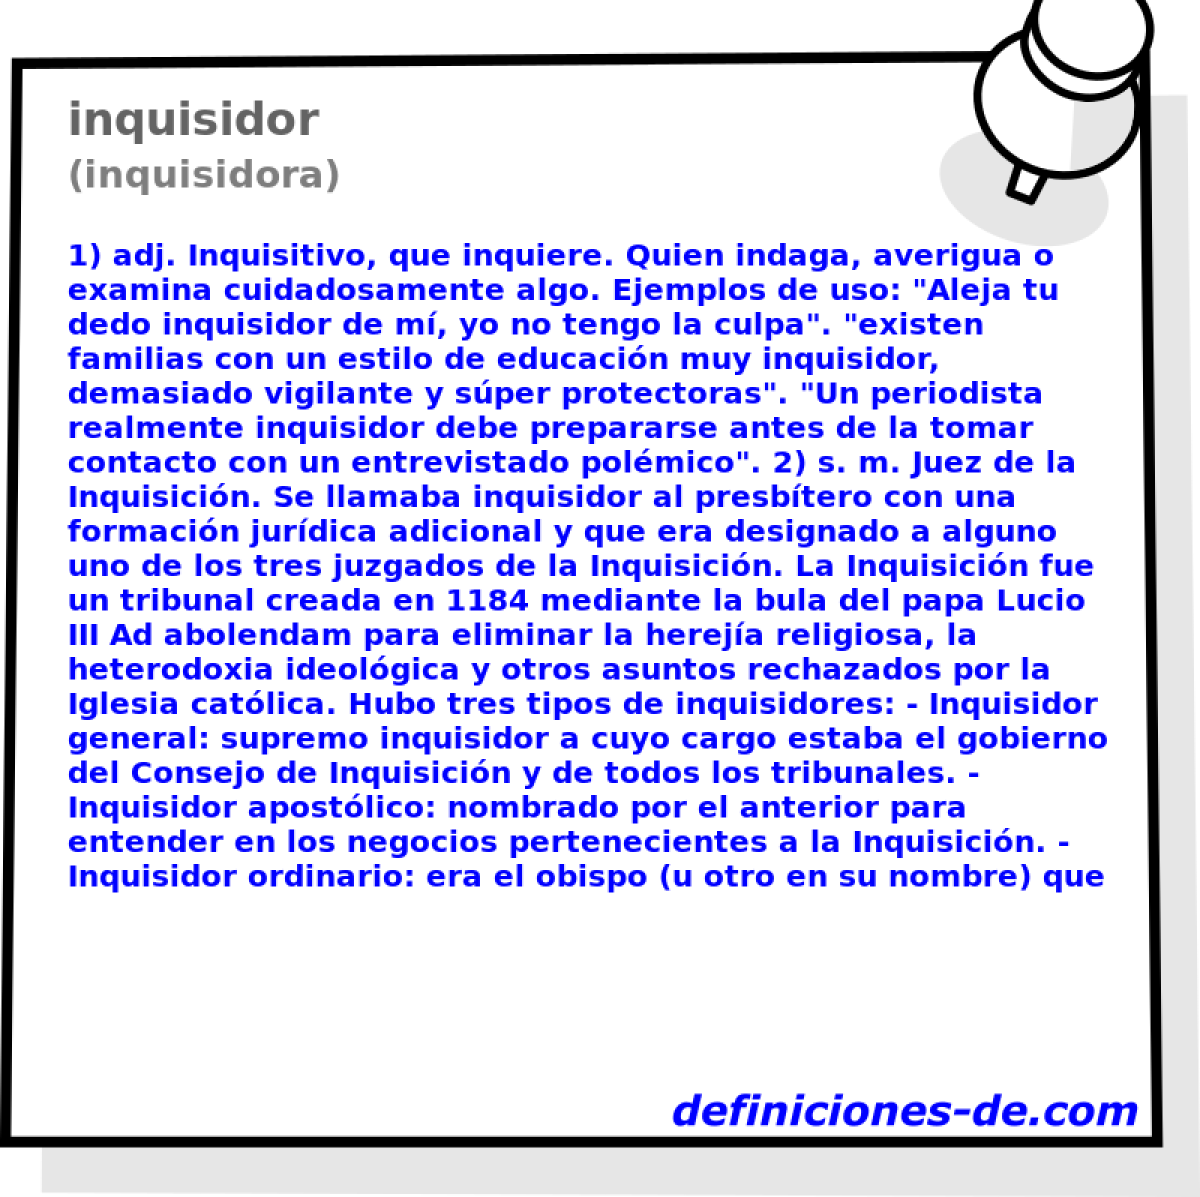 inquisidor (inquisidora)